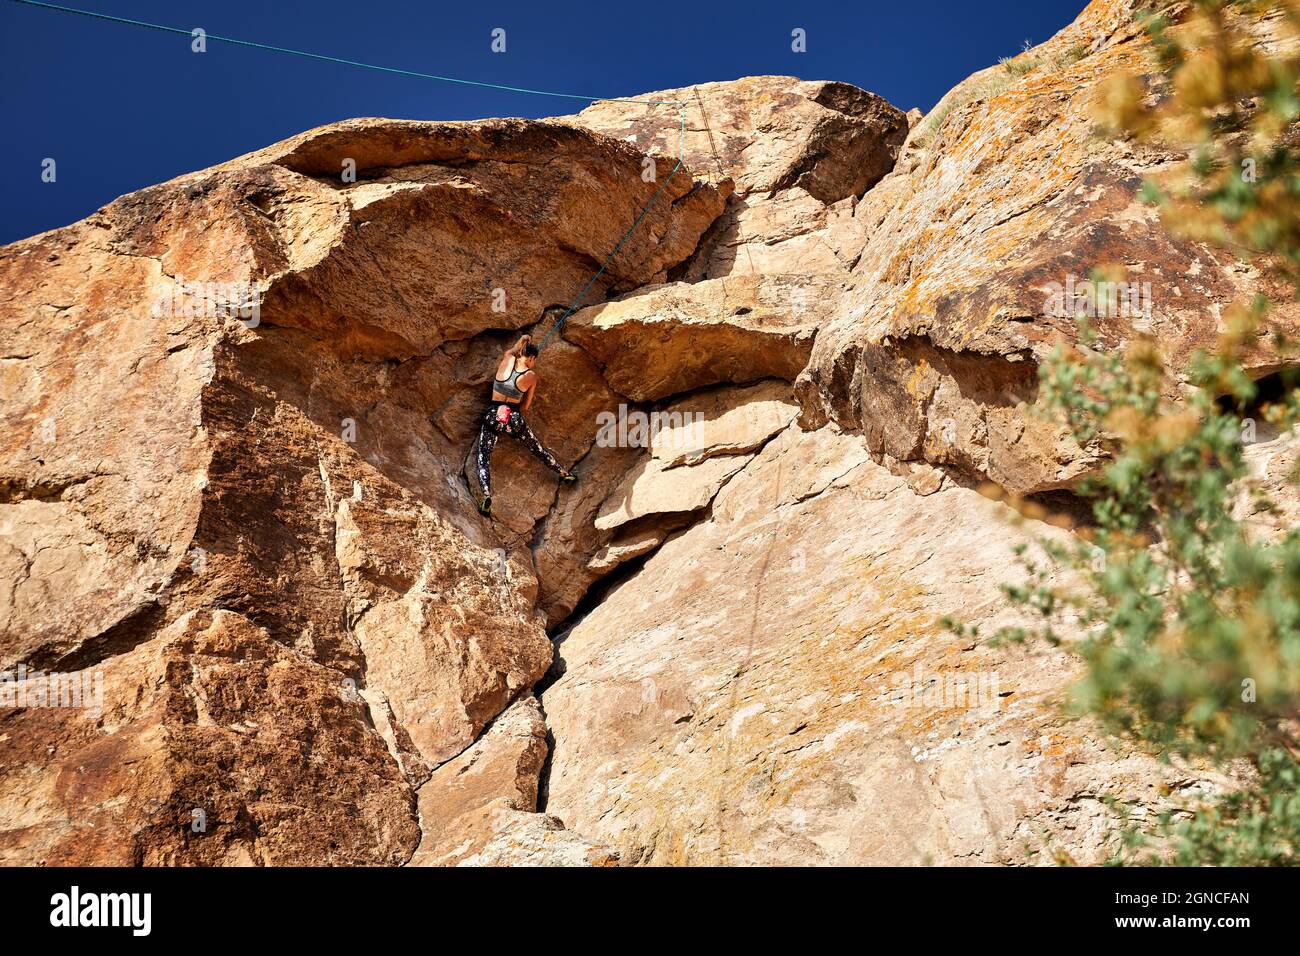 La giovane atleta sta arrampicando sull'alta roccia al tramonto vicino al fiume Ili in Kazakistan Foto Stock